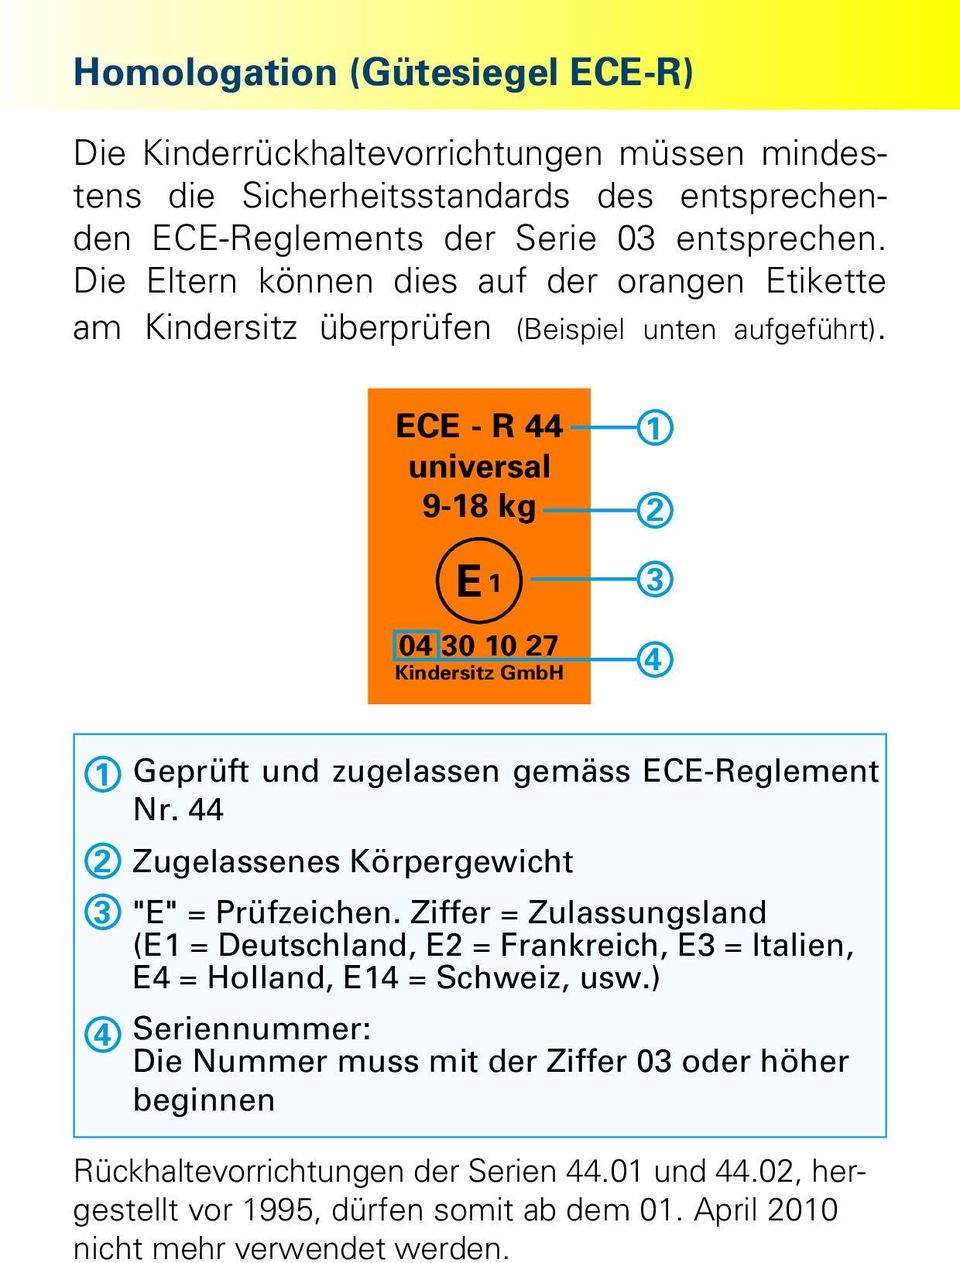 ECE - R 44 universal 9-18 kg E 1 04 30 10 27 Kindersitz GmbH 1 2 3 4 1 2 3 4 Geprüft und zugelassen gemäss ECE-Reglement Nr. 44 Zugelassenes Körpergewicht "E" = Prüfzeichen.